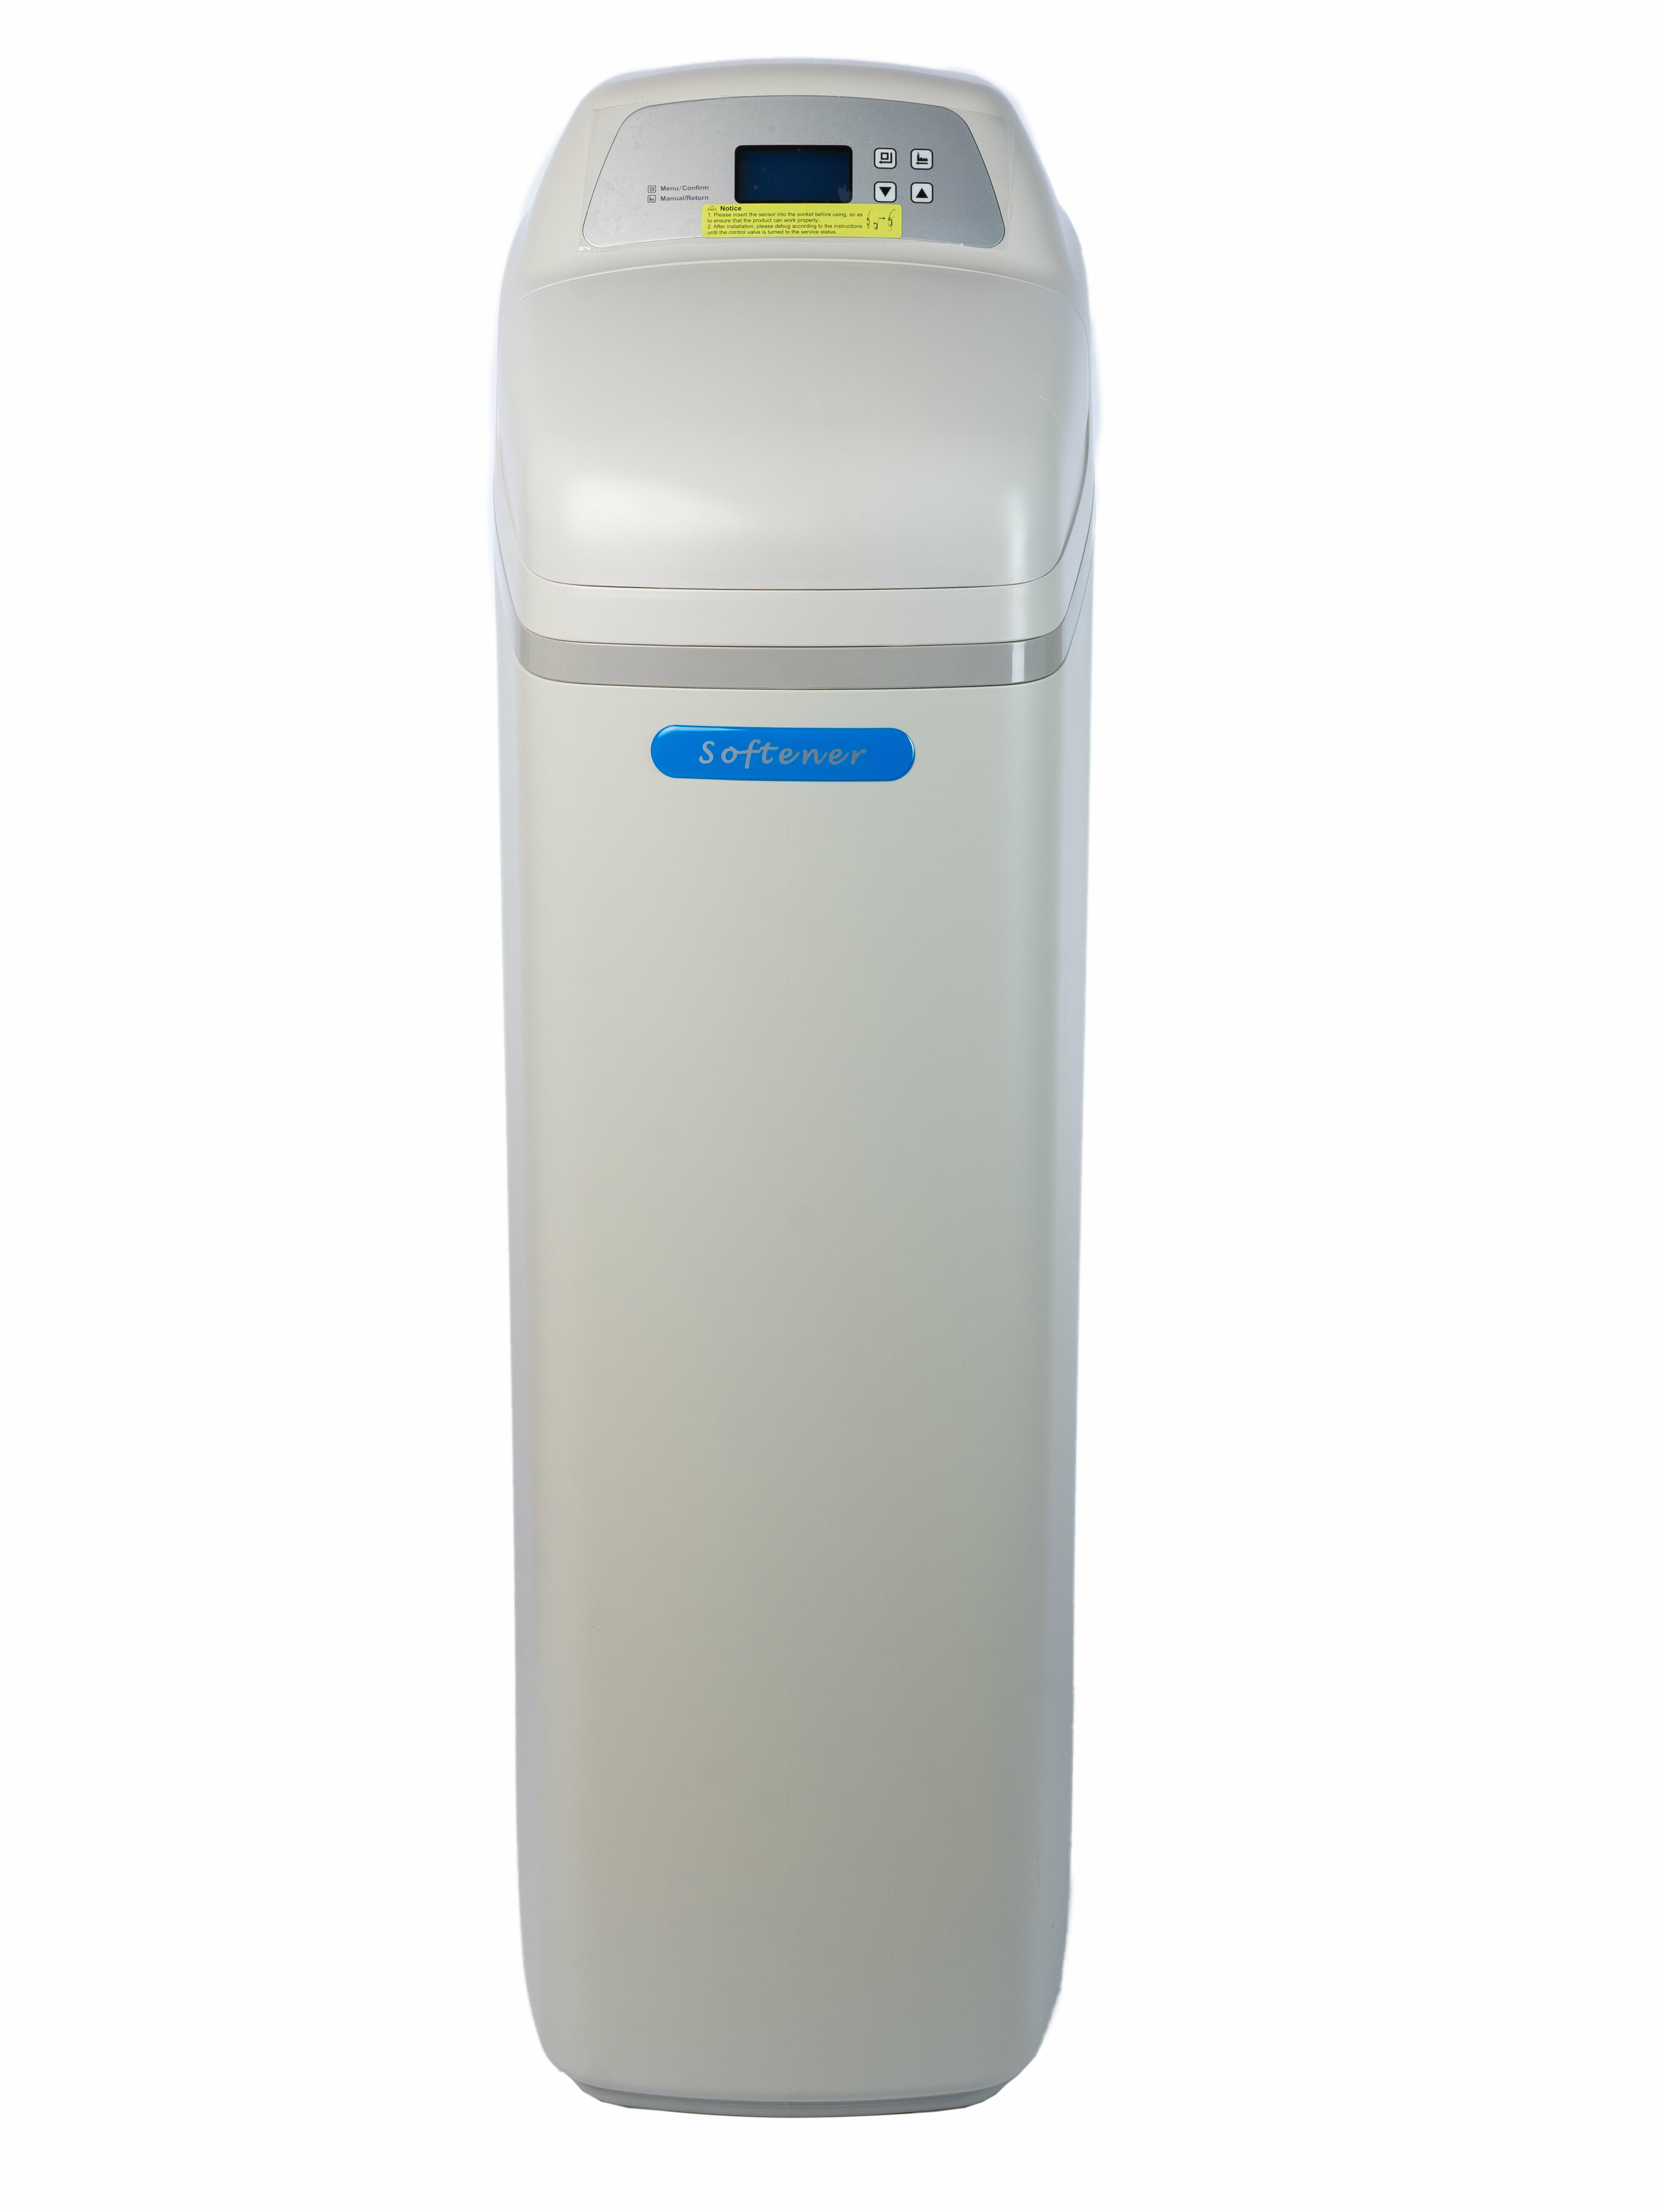 Магистральный фильтр для воды Гейзер-Aquachief 1035 RX Cabinet (R1500H), фильтр для воды кабинетного типа, водоочиститель до 1700 л/ч - фотография № 2